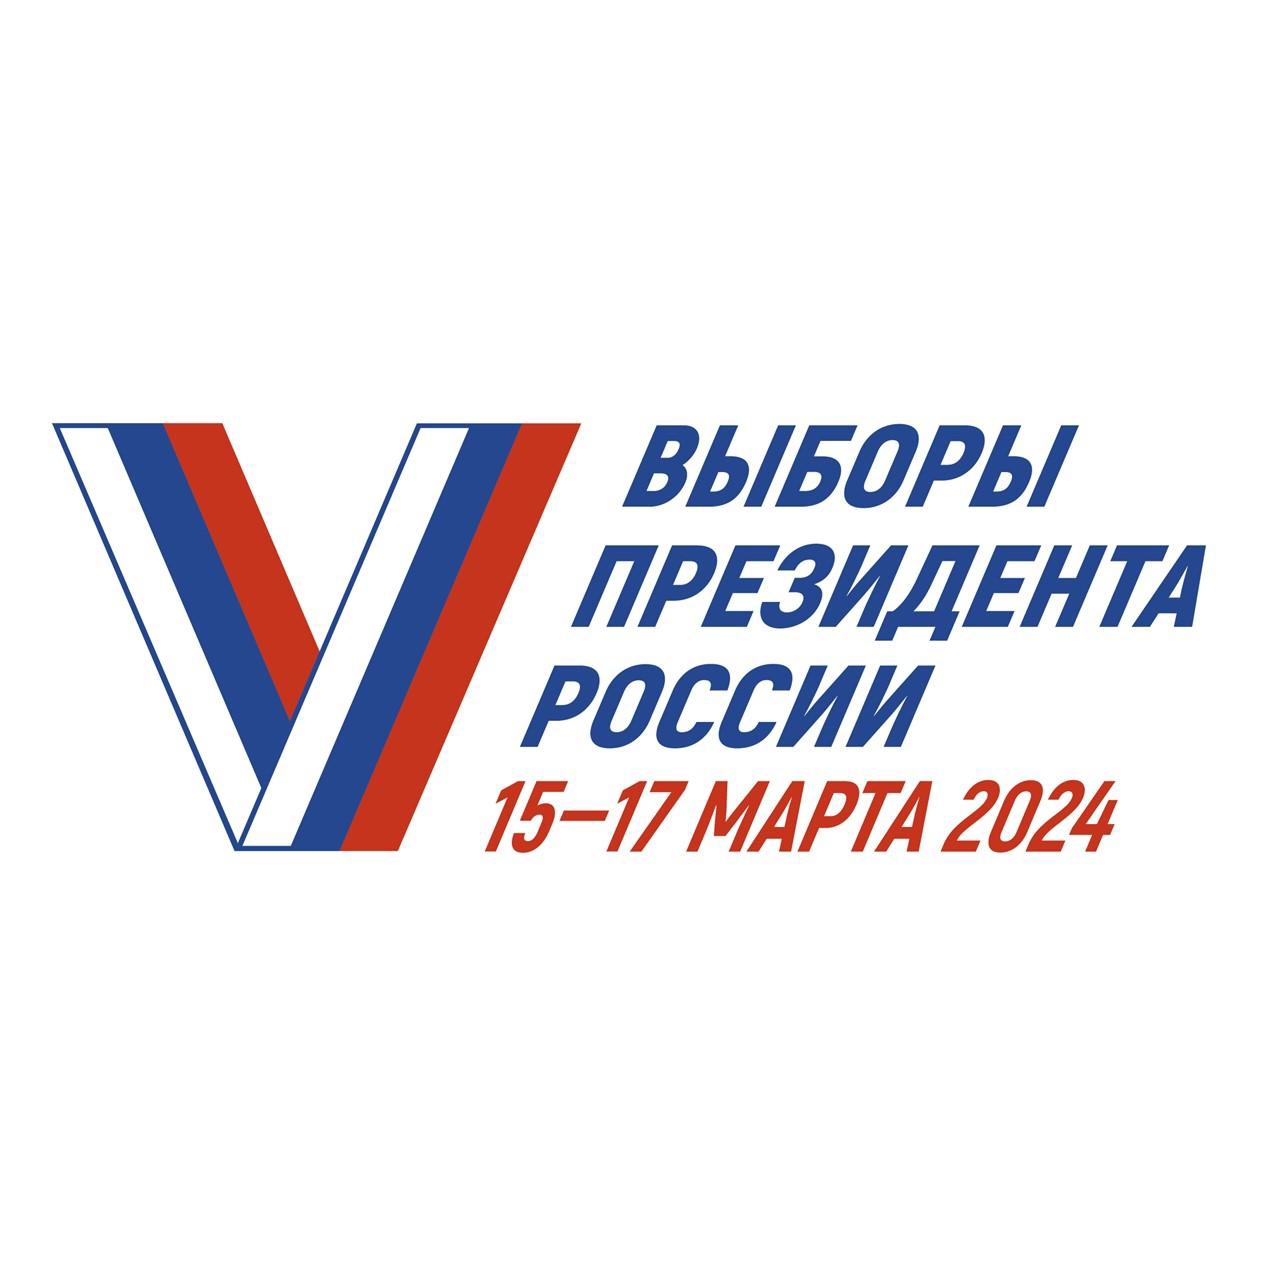 15 -17 марта 2024 г. будут проводиться выборы Президента Российской Федерации.